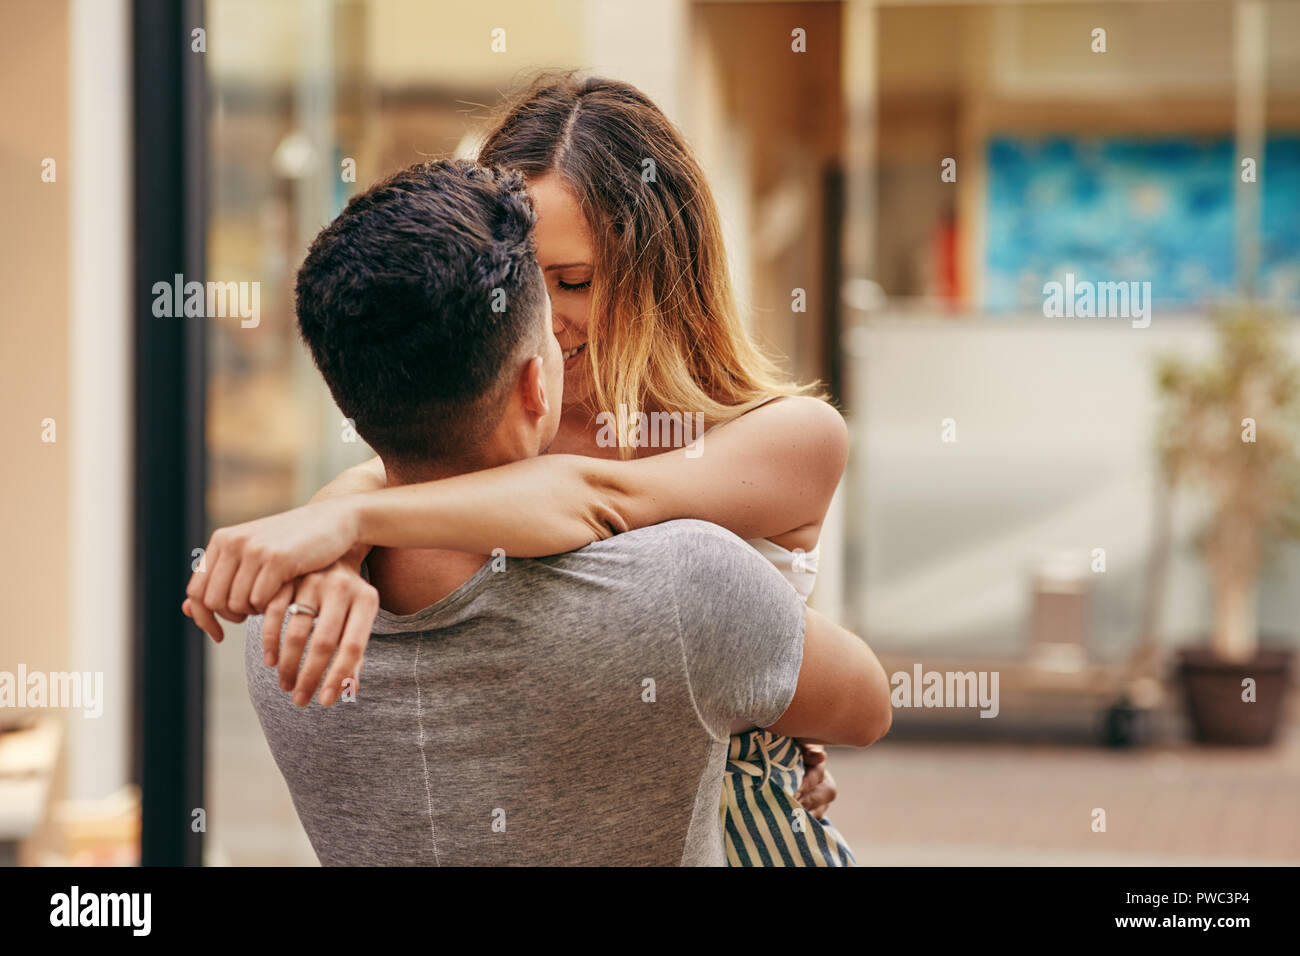 Young couple embracing et partage un baiser romantique tout en se tenant ensemble dans une rue de la ville Banque D'Images